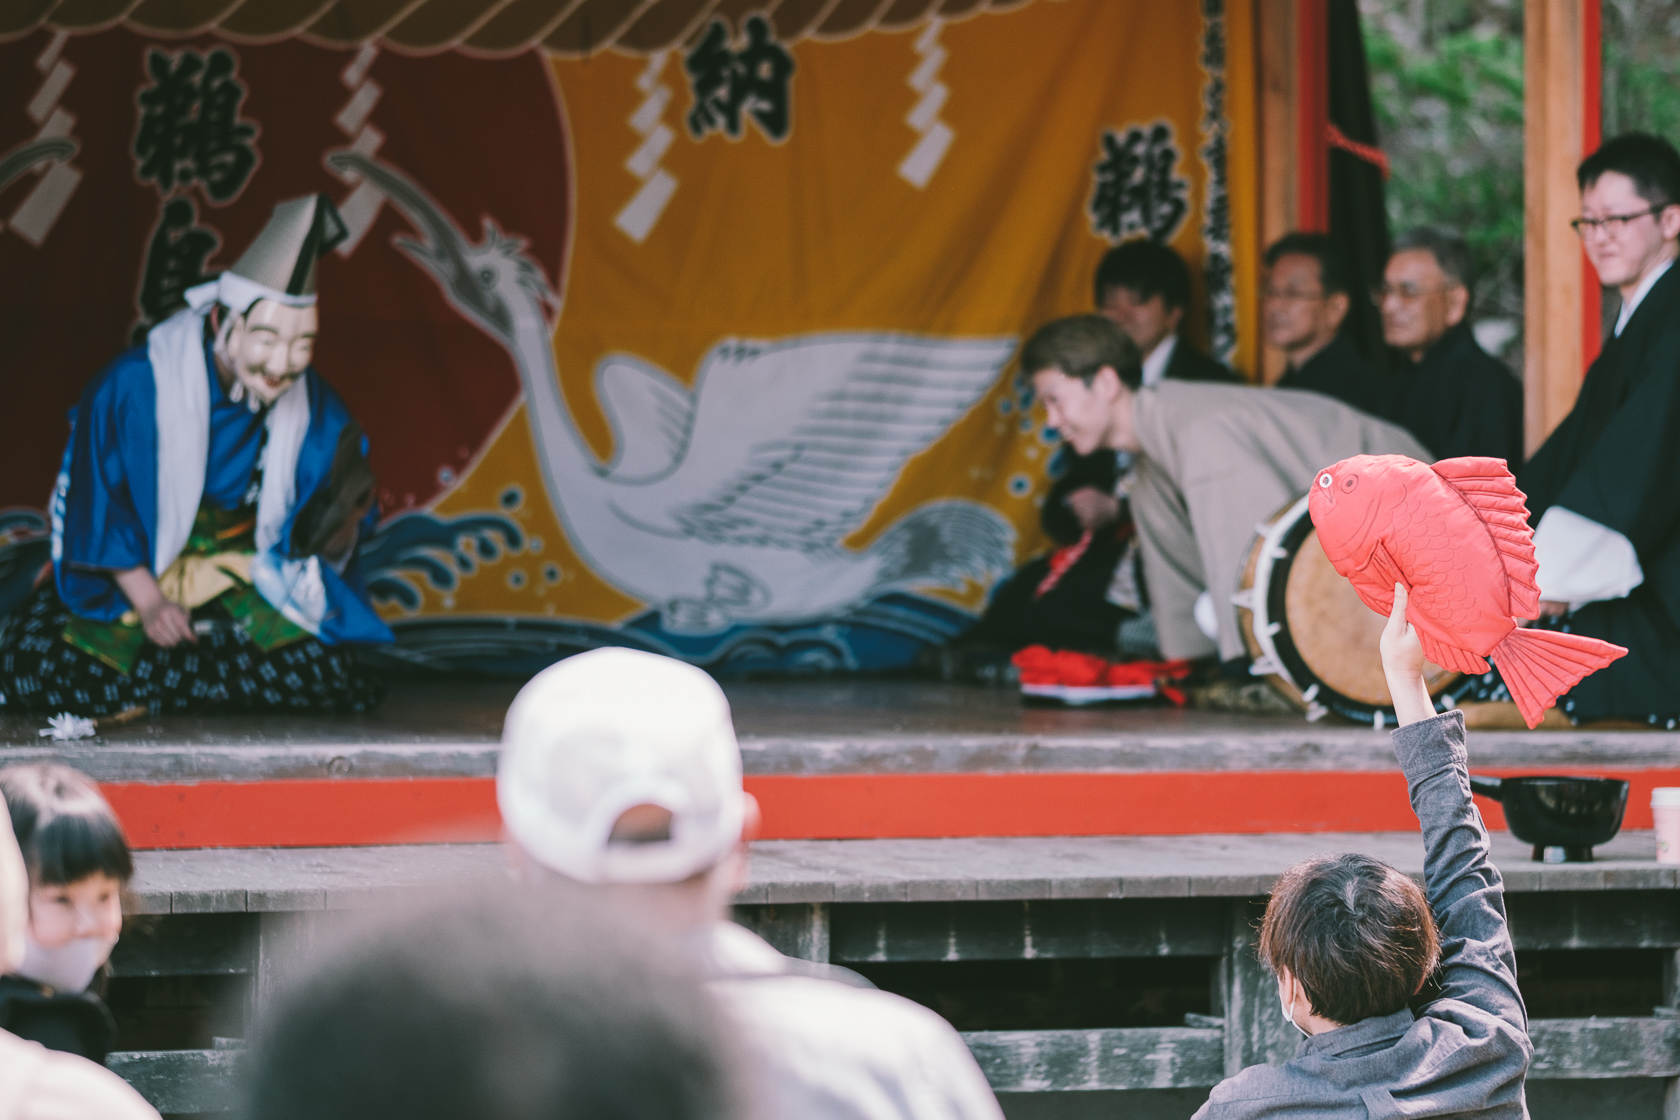 鵜鳥神楽, 鵜鳥神社, 恵比須舞 の写真